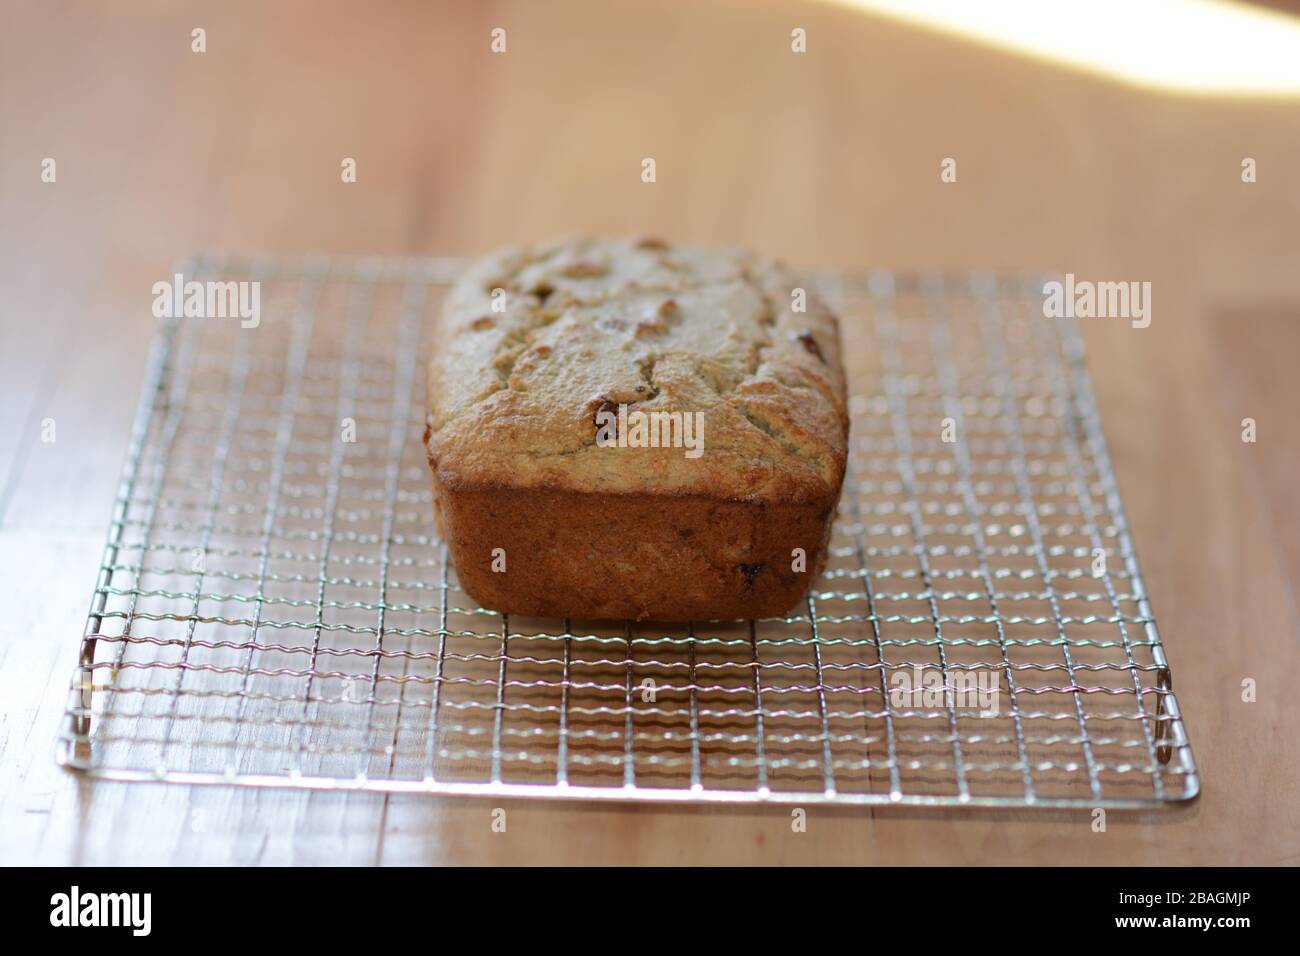 Foto von frisch gebackenem, hausgemachtem Brot auf einem Kühlregal. Schnelles Brot. Bananenbrot mit Schokoladenchips. Stockfoto